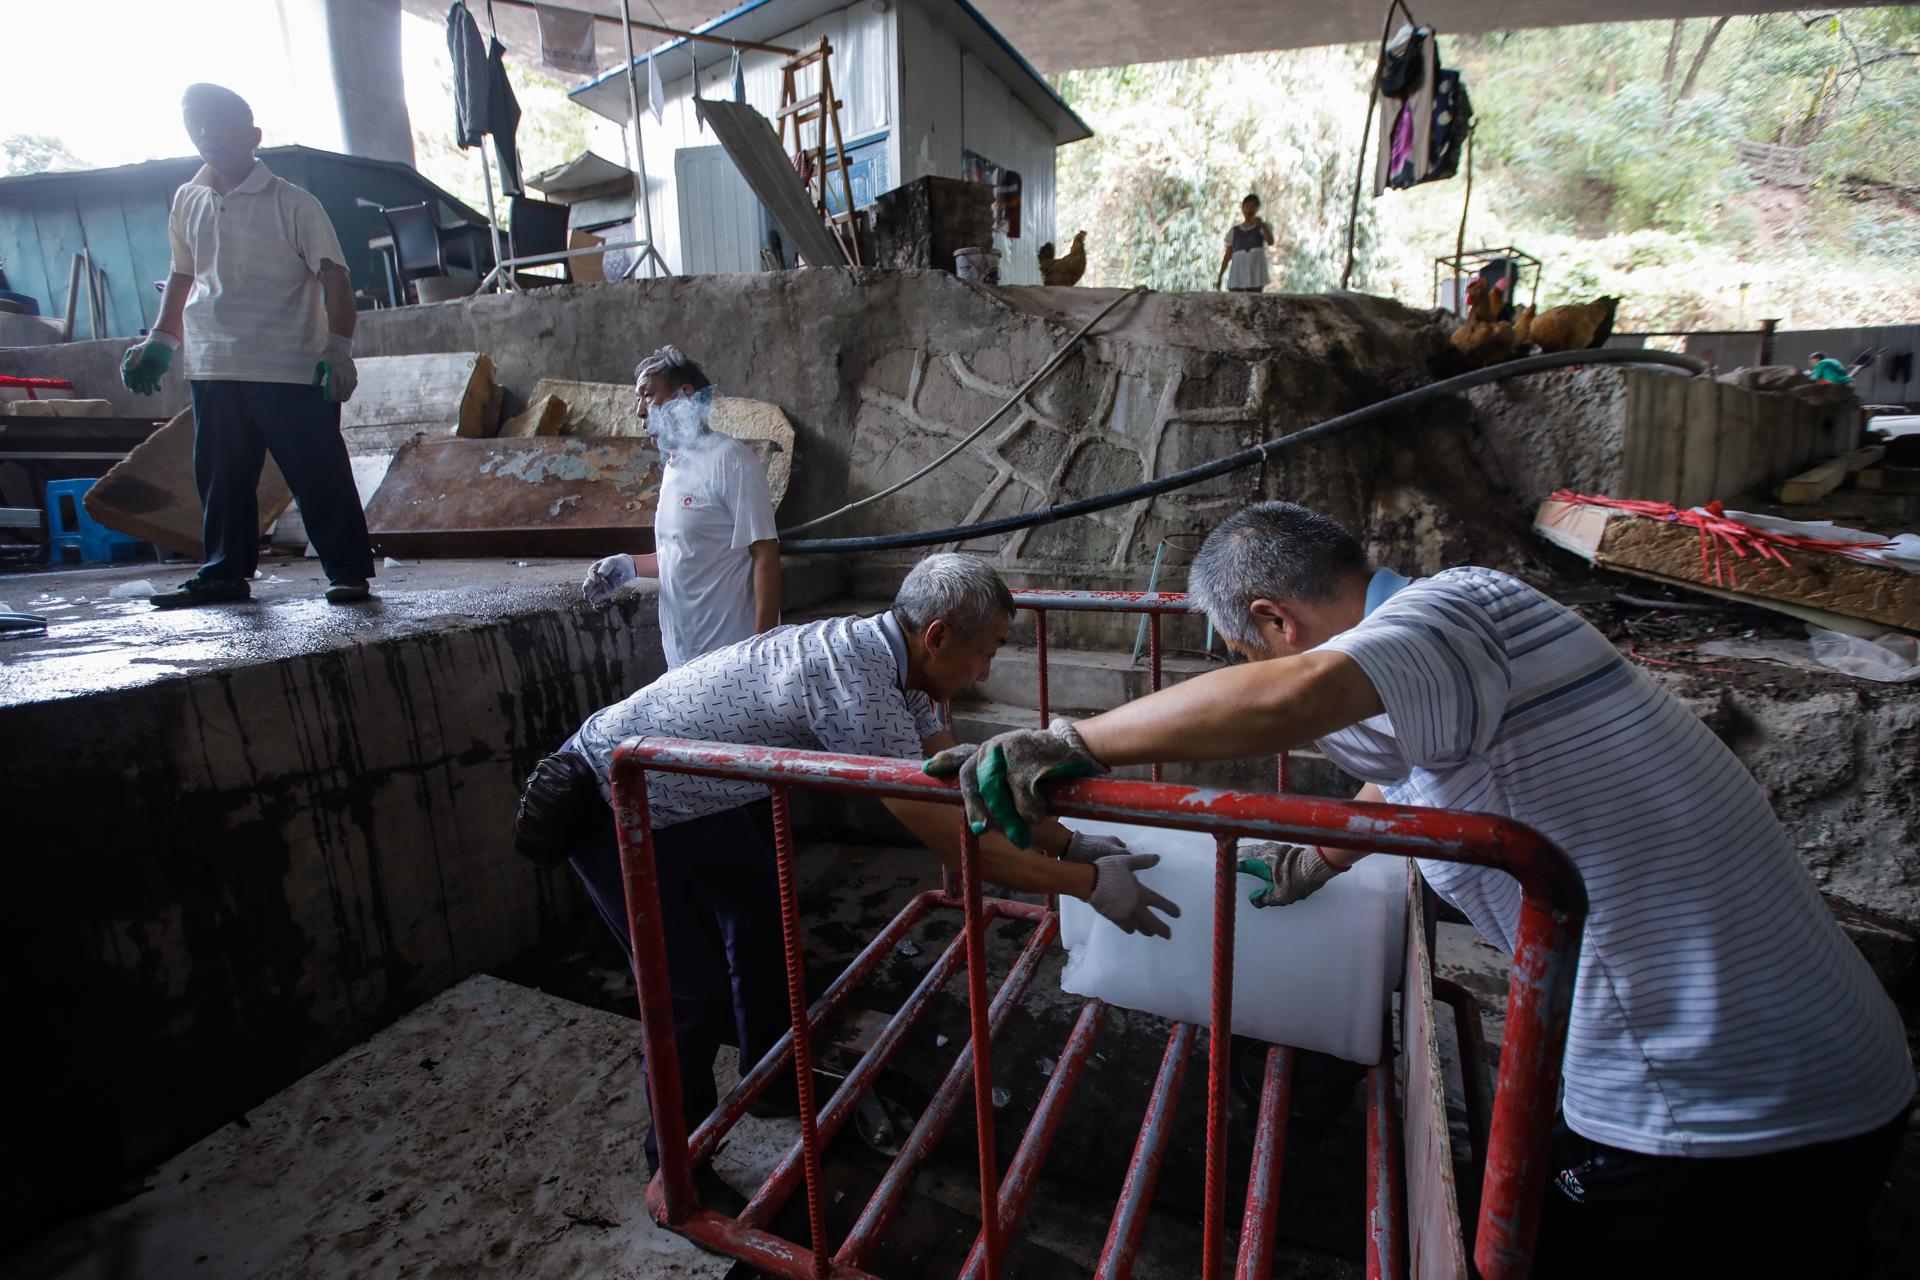 Imagen de archivo de unos trabajadores en un mercado de mariscos en China.EFE/EPA/WU HAO